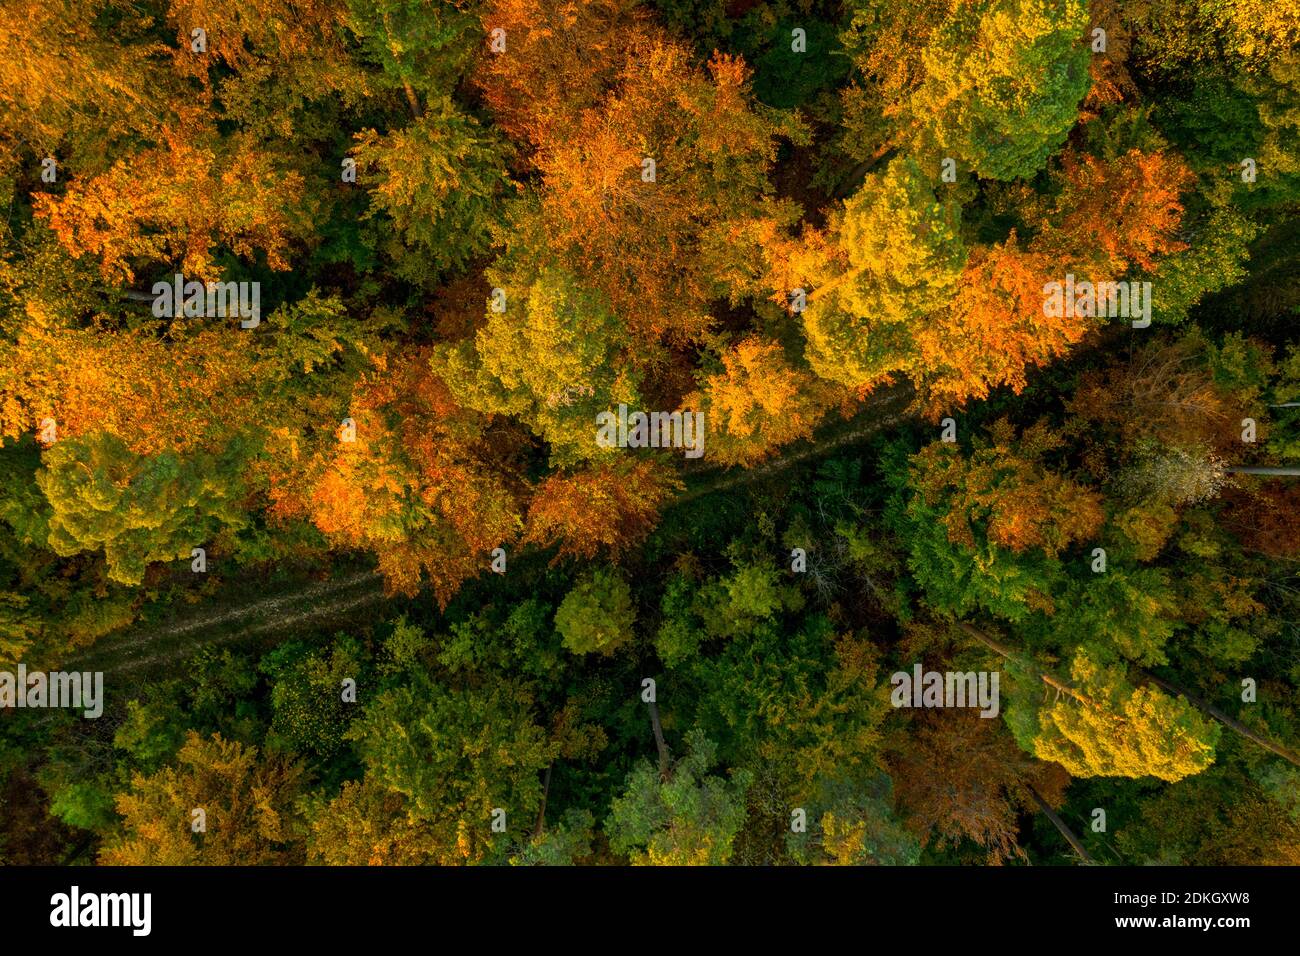 Vista superior de los árboles de colores en la temporada de otoño, auténtica belleza en la naturaleza. Foto de stock